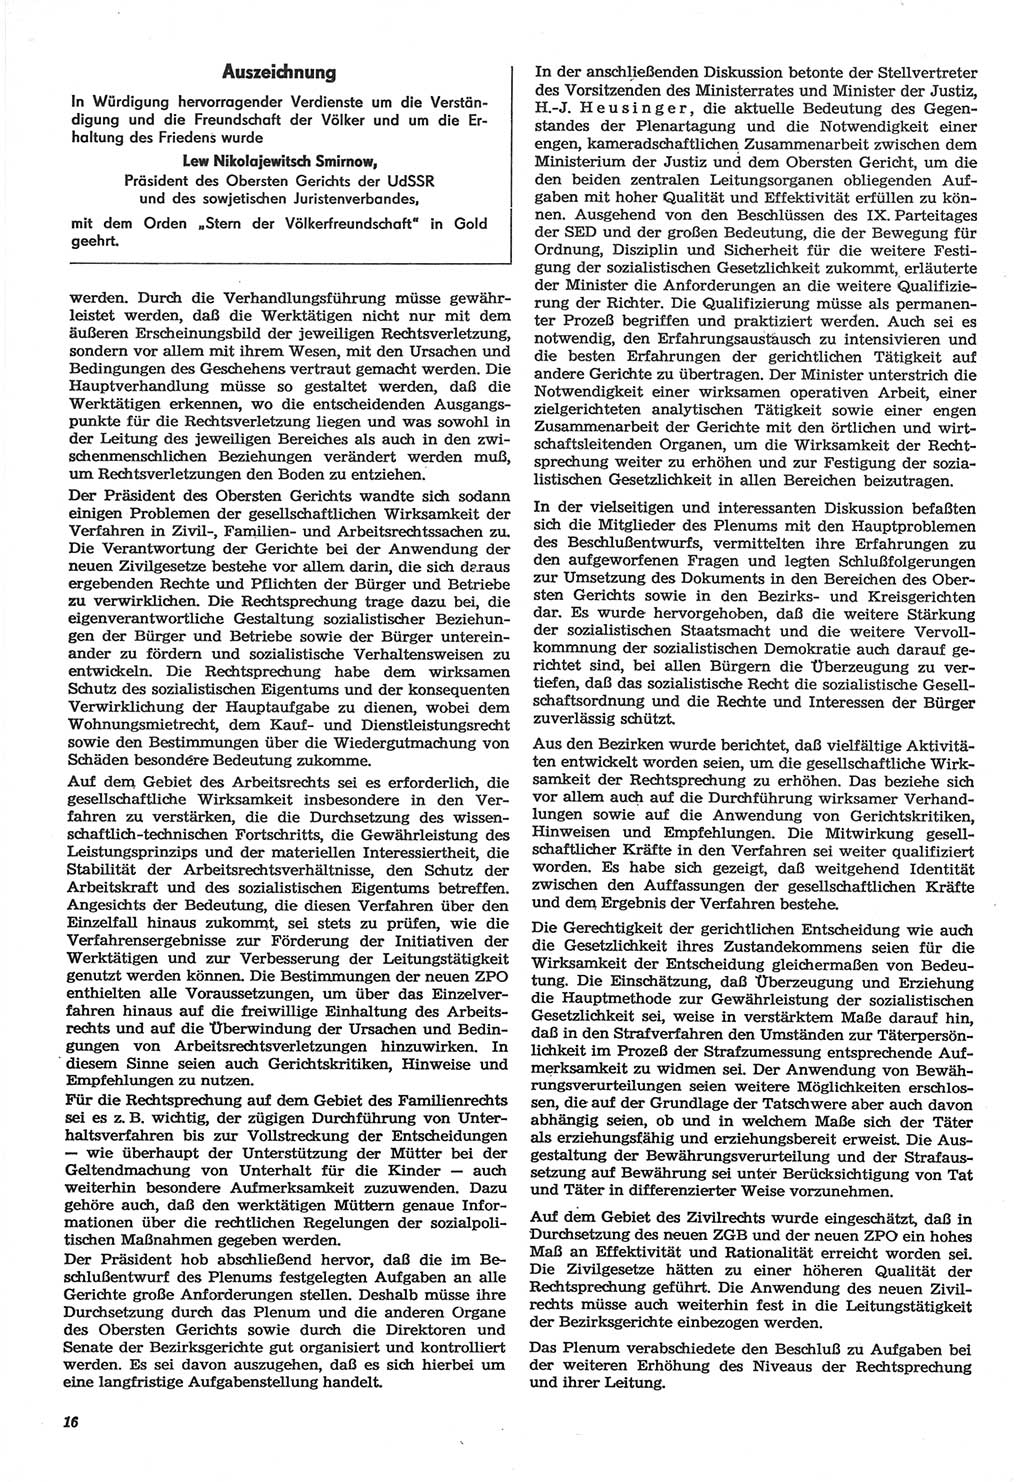 Neue Justiz (NJ), Zeitschrift für Recht und Rechtswissenschaft-Zeitschrift, sozialistisches Recht und Gesetzlichkeit, 31. Jahrgang 1977, Seite 16 (NJ DDR 1977, S. 16)